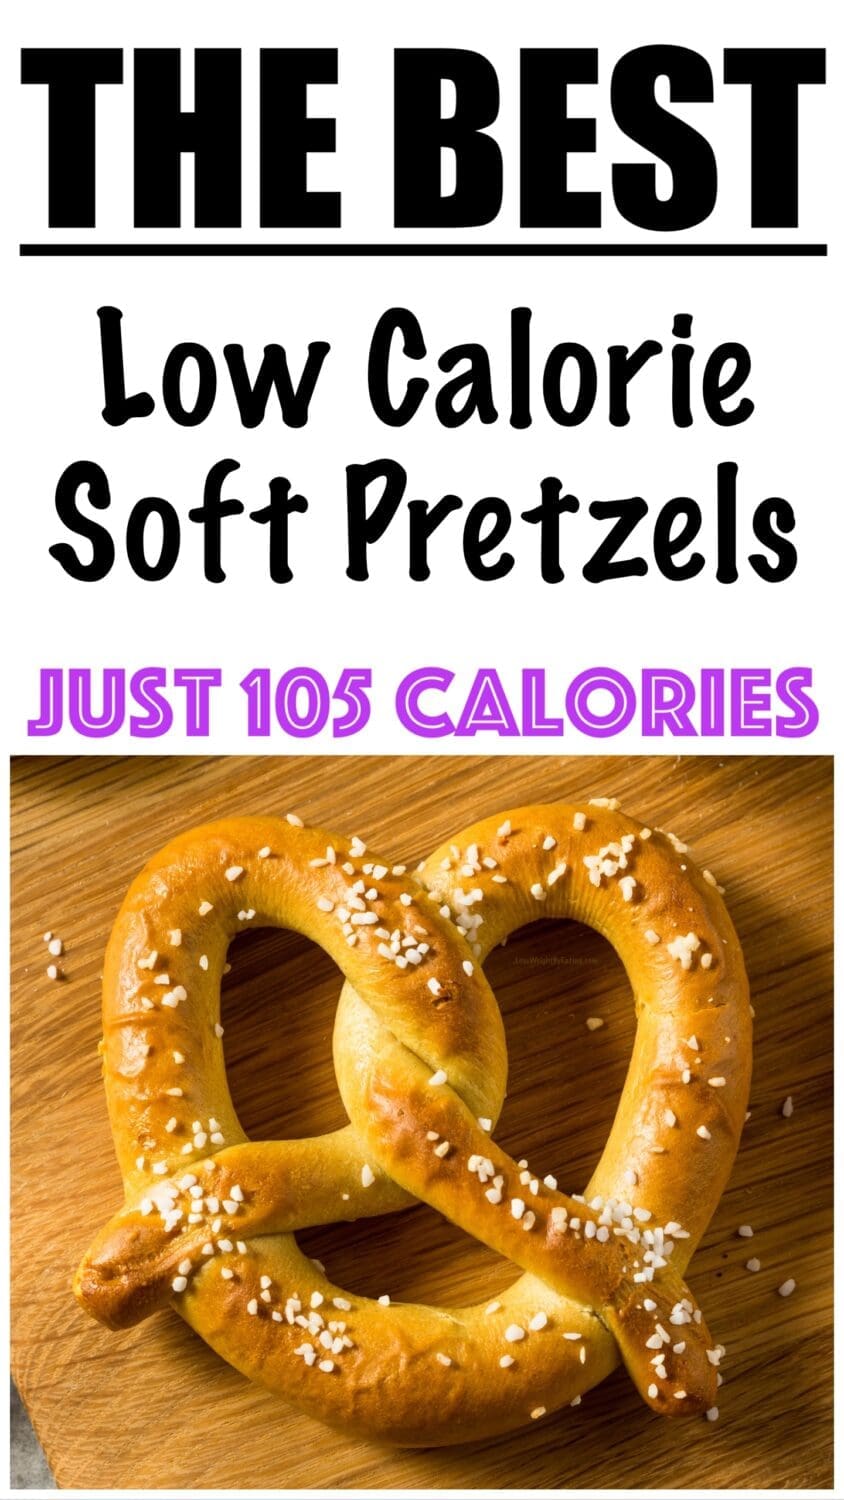 Low Calorie Soft Pretzels